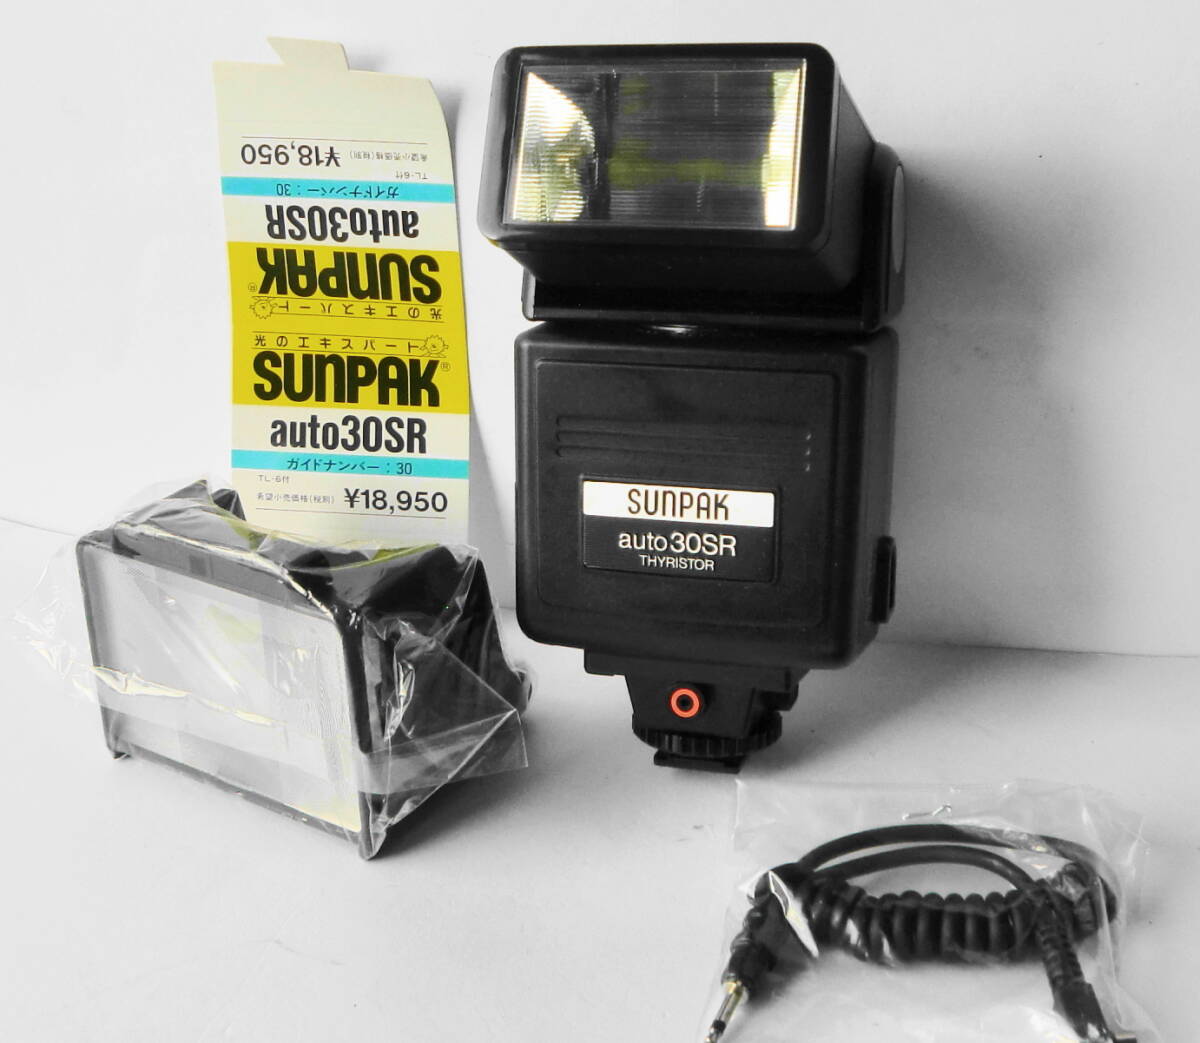 * солнечный упаковка SUNPAK стробоскоп auto 30SR ( рабочий товар )